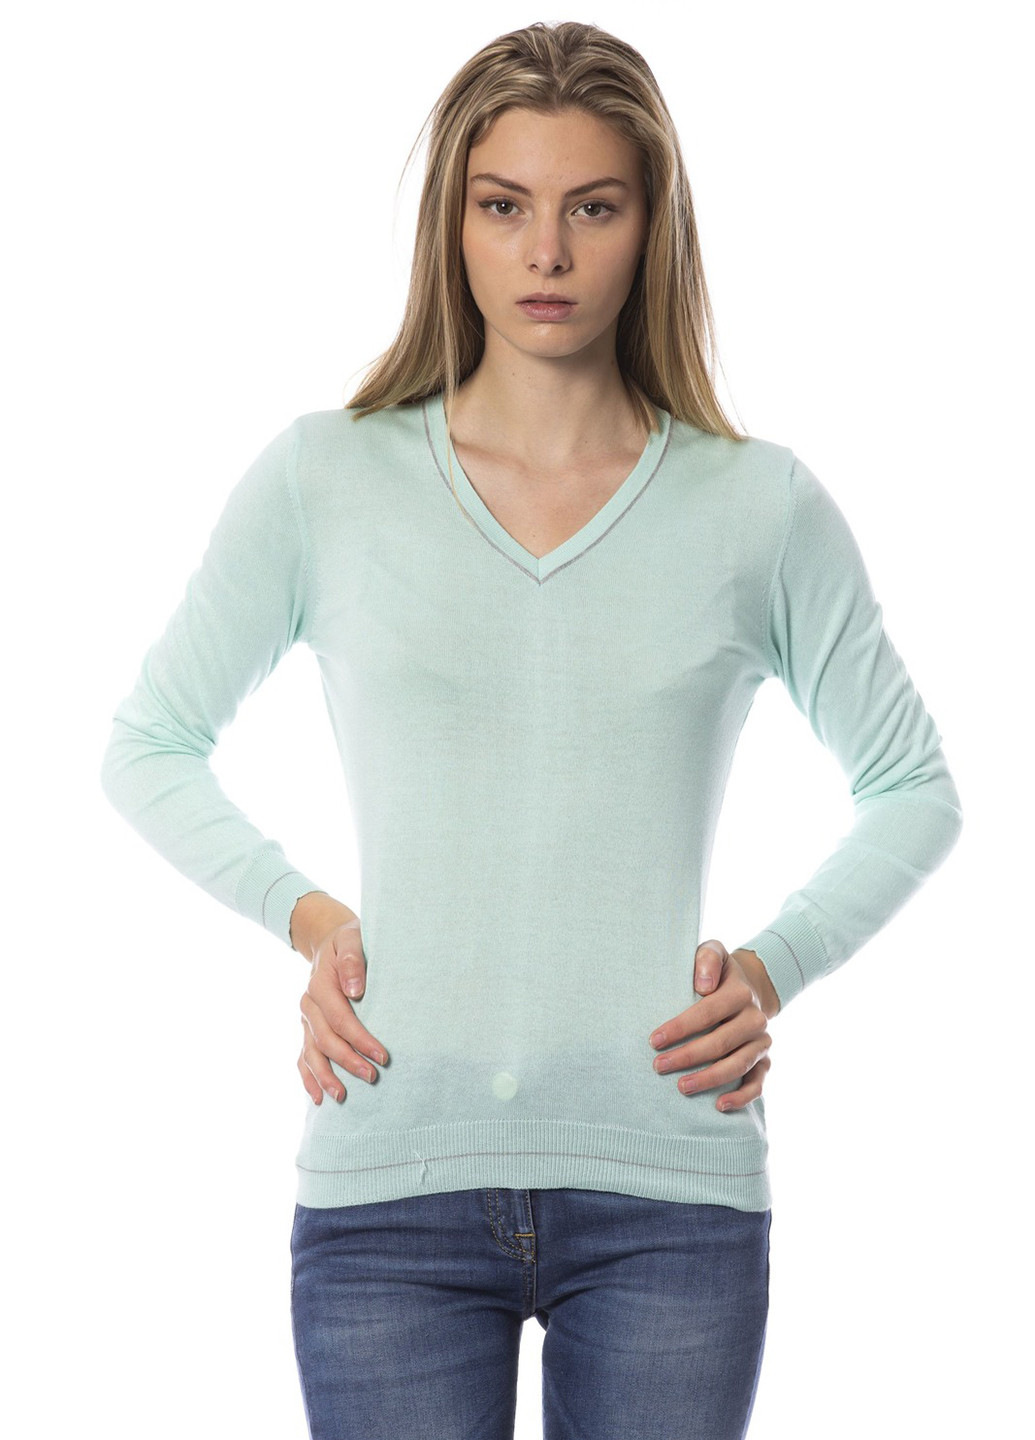 Светло-бирюзовый демисезонный пуловер пуловер Roberto Cavalli